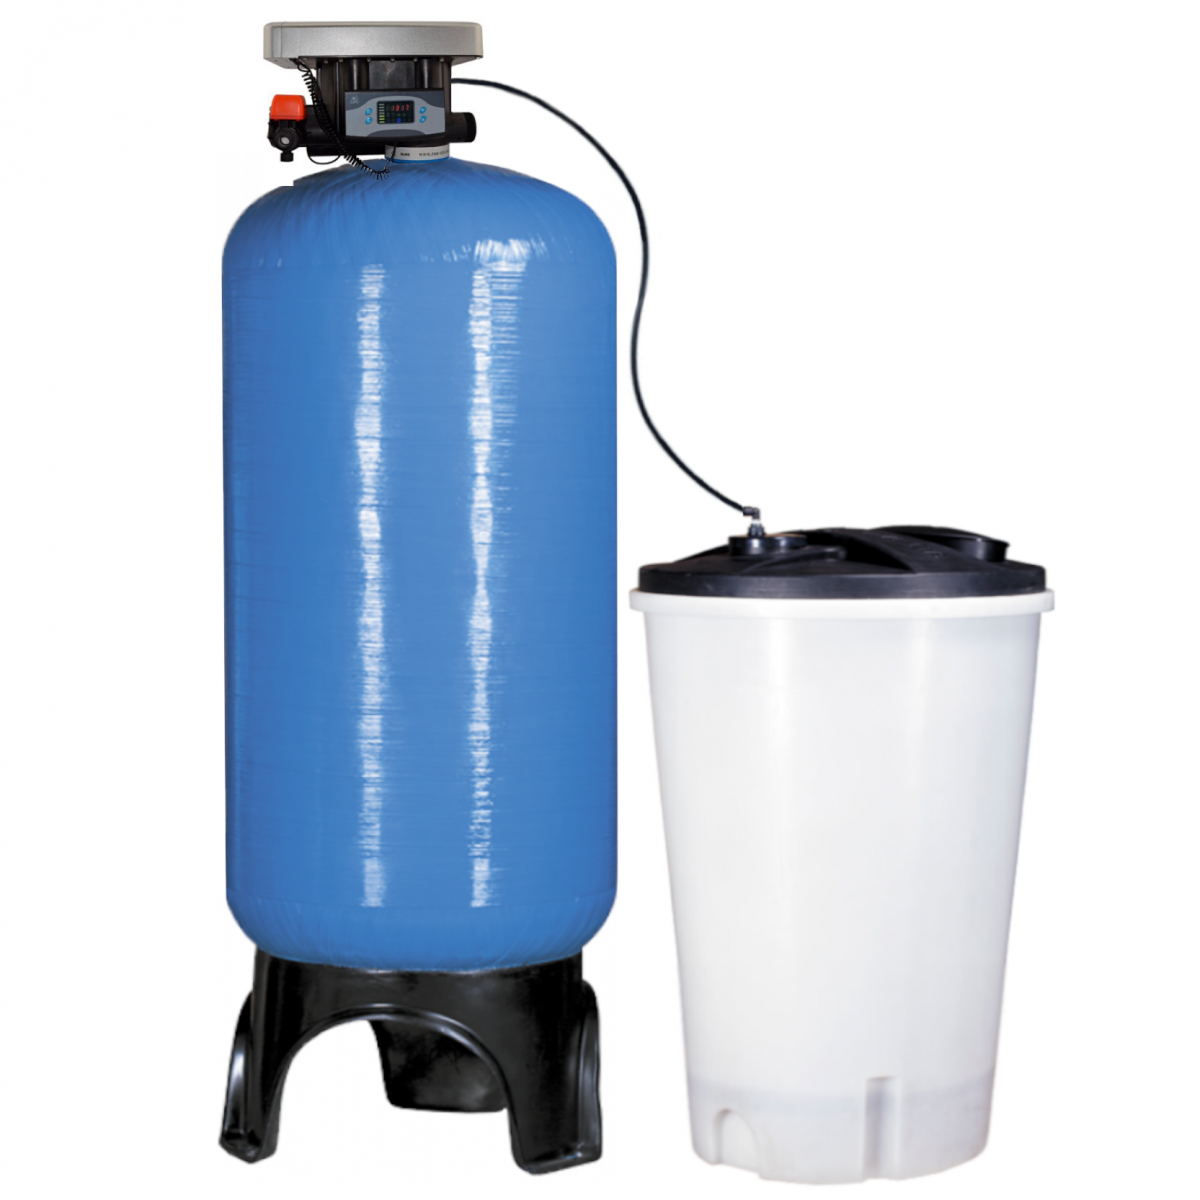 Умягчитель воды Clack 1054 с солевым баком. Умягчитель 3672. Фильтр умягчения воды fu1665ci. Умягчитель воды 600 л/ч. Фильтры умягчения воды для дома